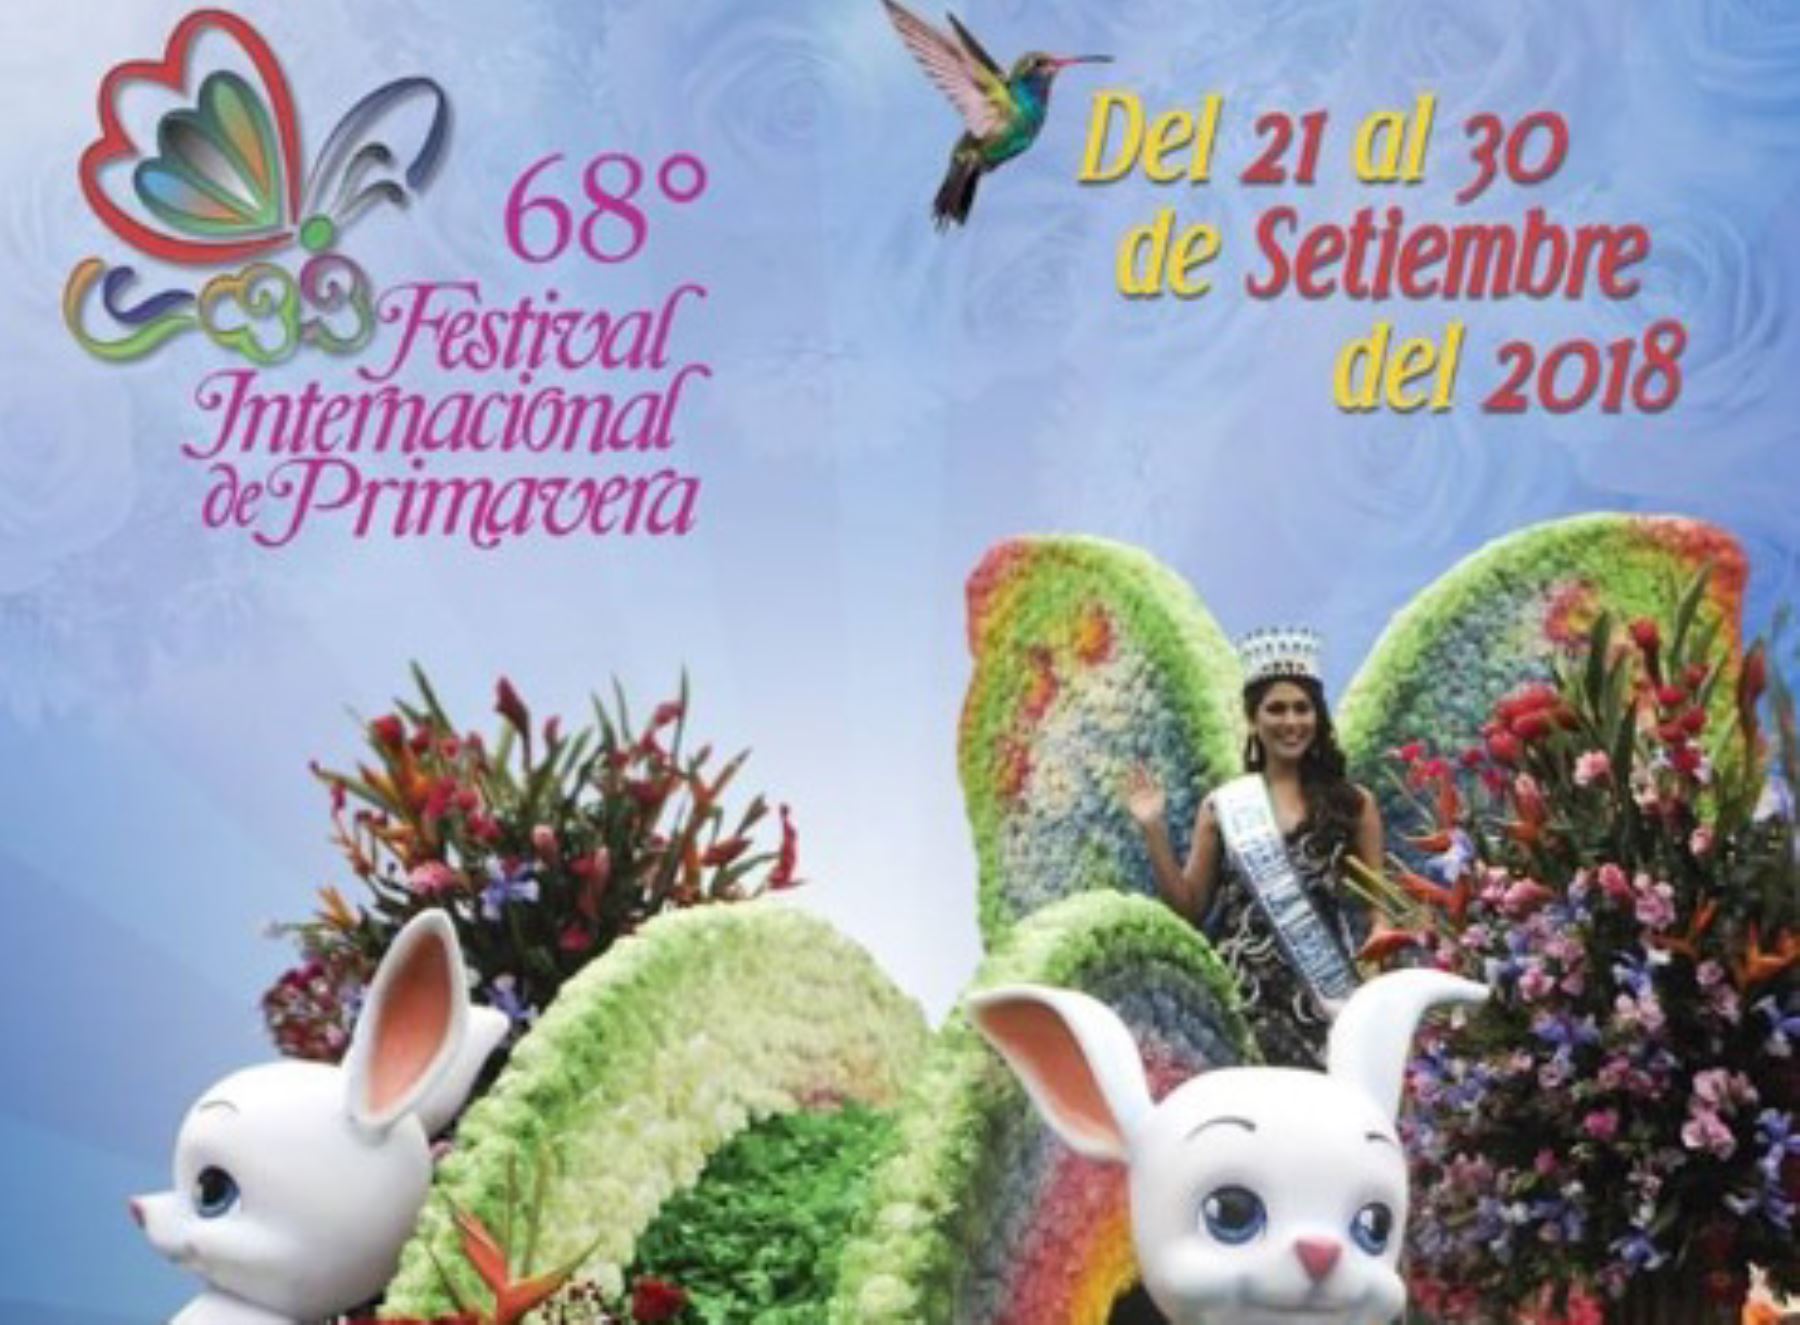 Con gran entusiasmo la población de la ciudad de Trujillo se viene preparando para la celebración del 68° Festival Internacional de la Primavera, a realizarse del 21 al 30 de setiembre, con diversas actividades entre las que destaca el Gran Corso Primaveral que recorre la capital de la región La Libertad.